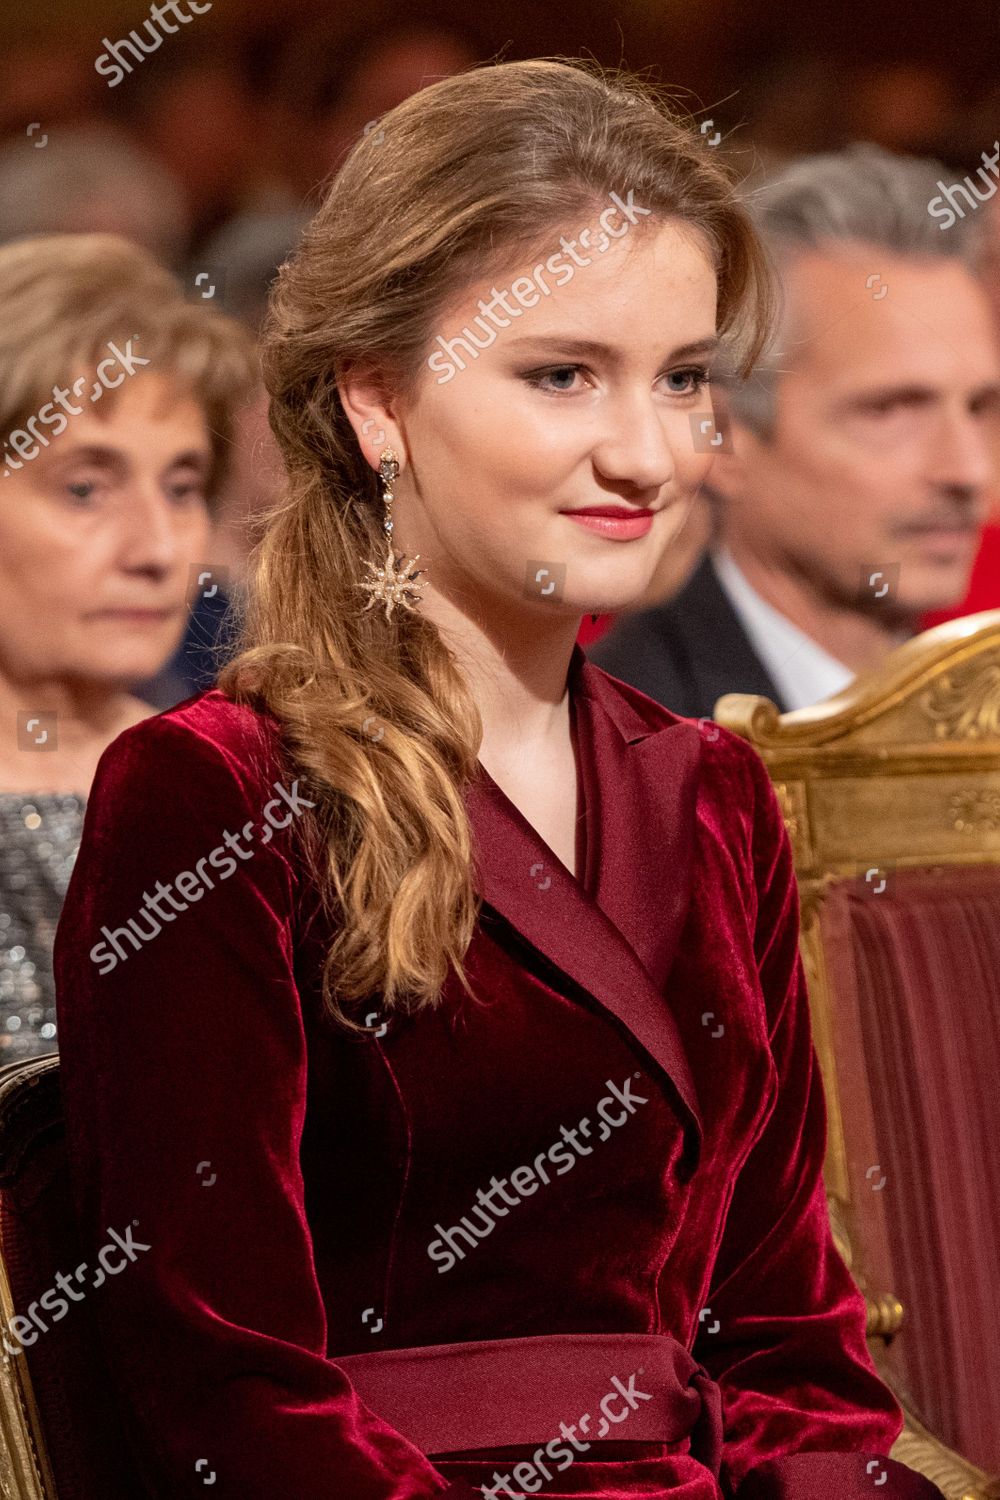 belgian-royals-attend-christmas-concert-brussels-belgium-shutterstock-editorial-10508940ac.jpg